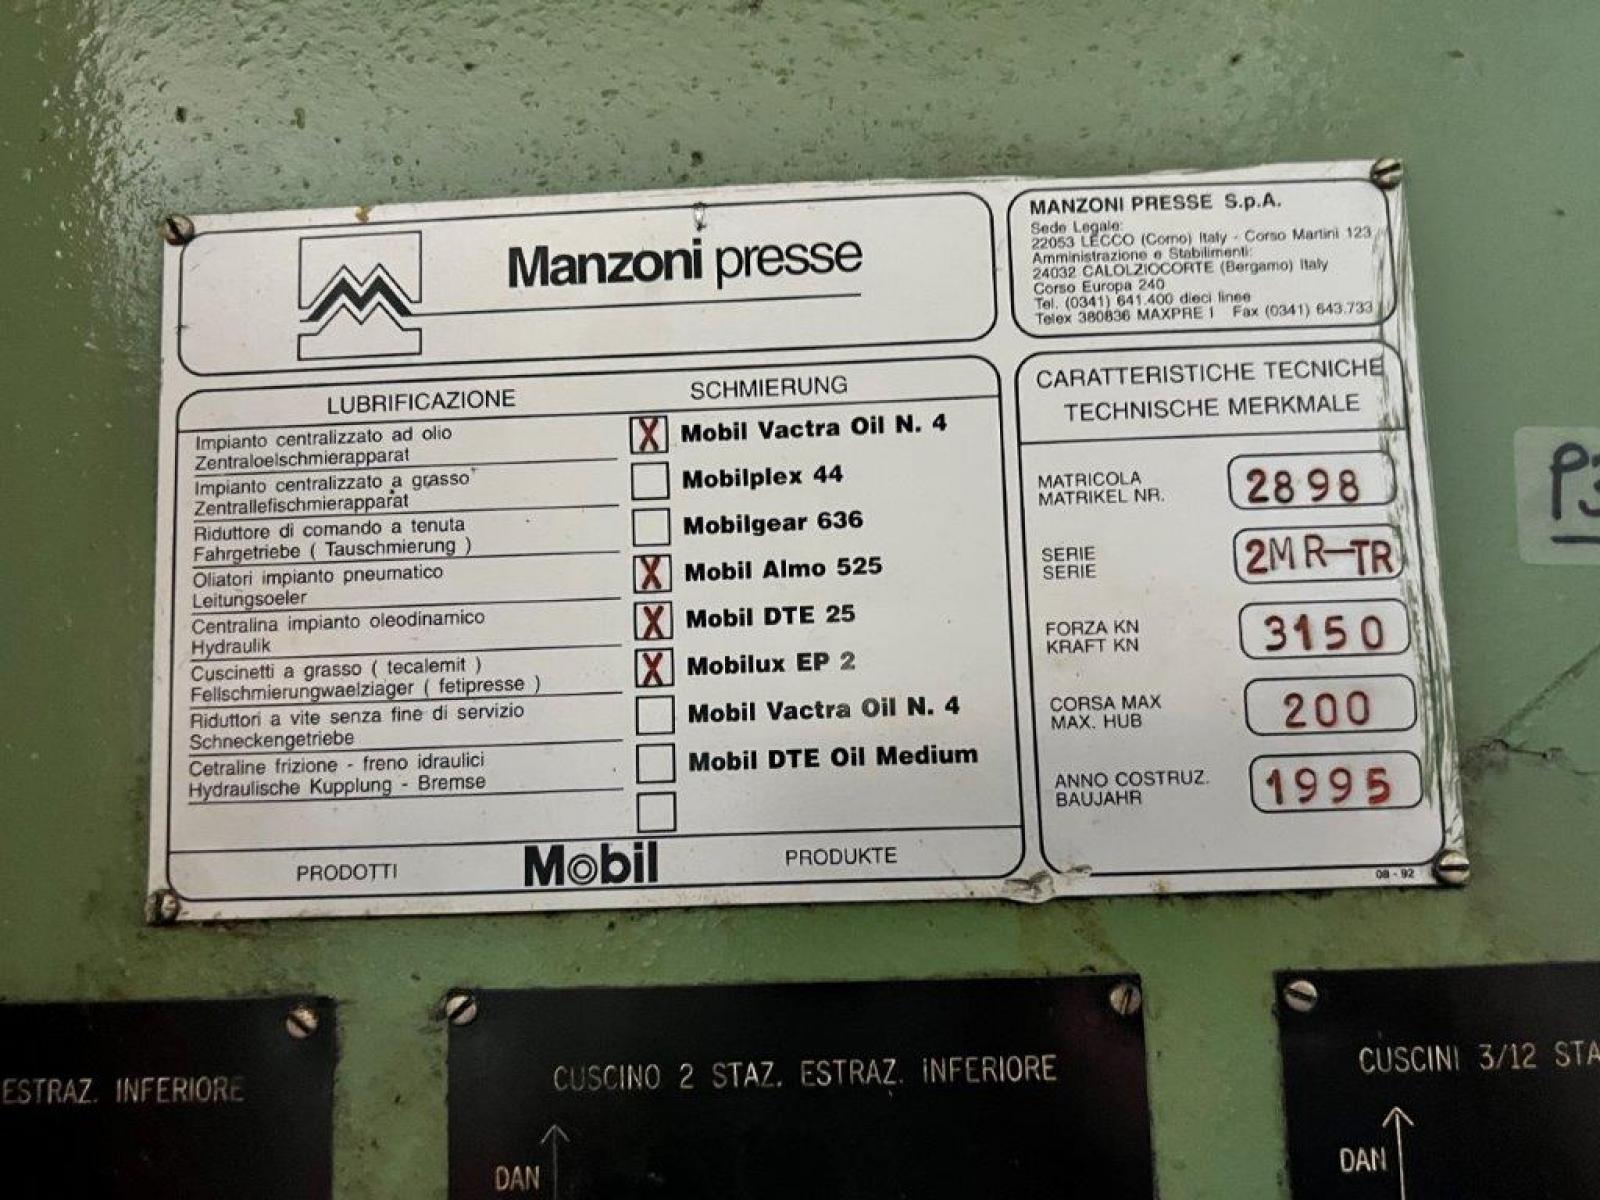 n. 1 pressa meccanica eccentrica MANZONI PRESSE, Mod. T 315, Tipo 2MR-TR, potenza 315 ton, matr. 3289, anno 2000, marcata CE, pi